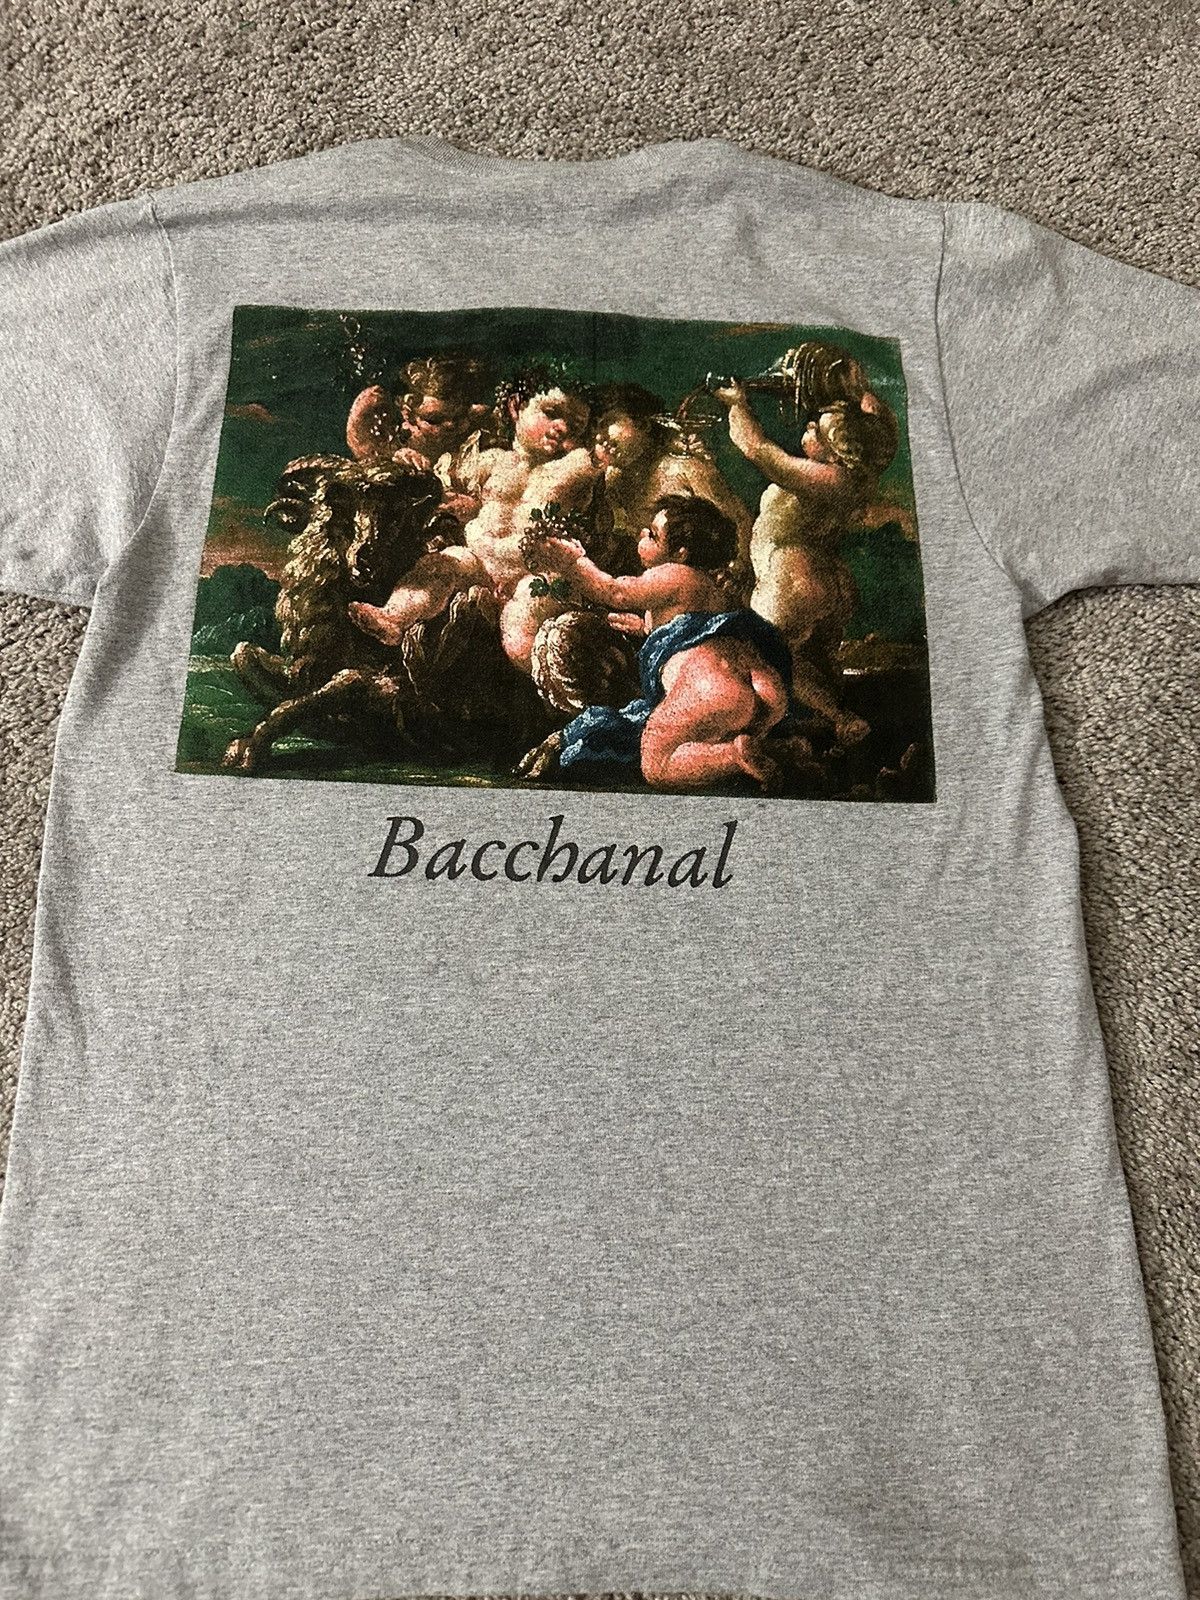 Supreme Supreme Bacchanal Shirt | Grailed